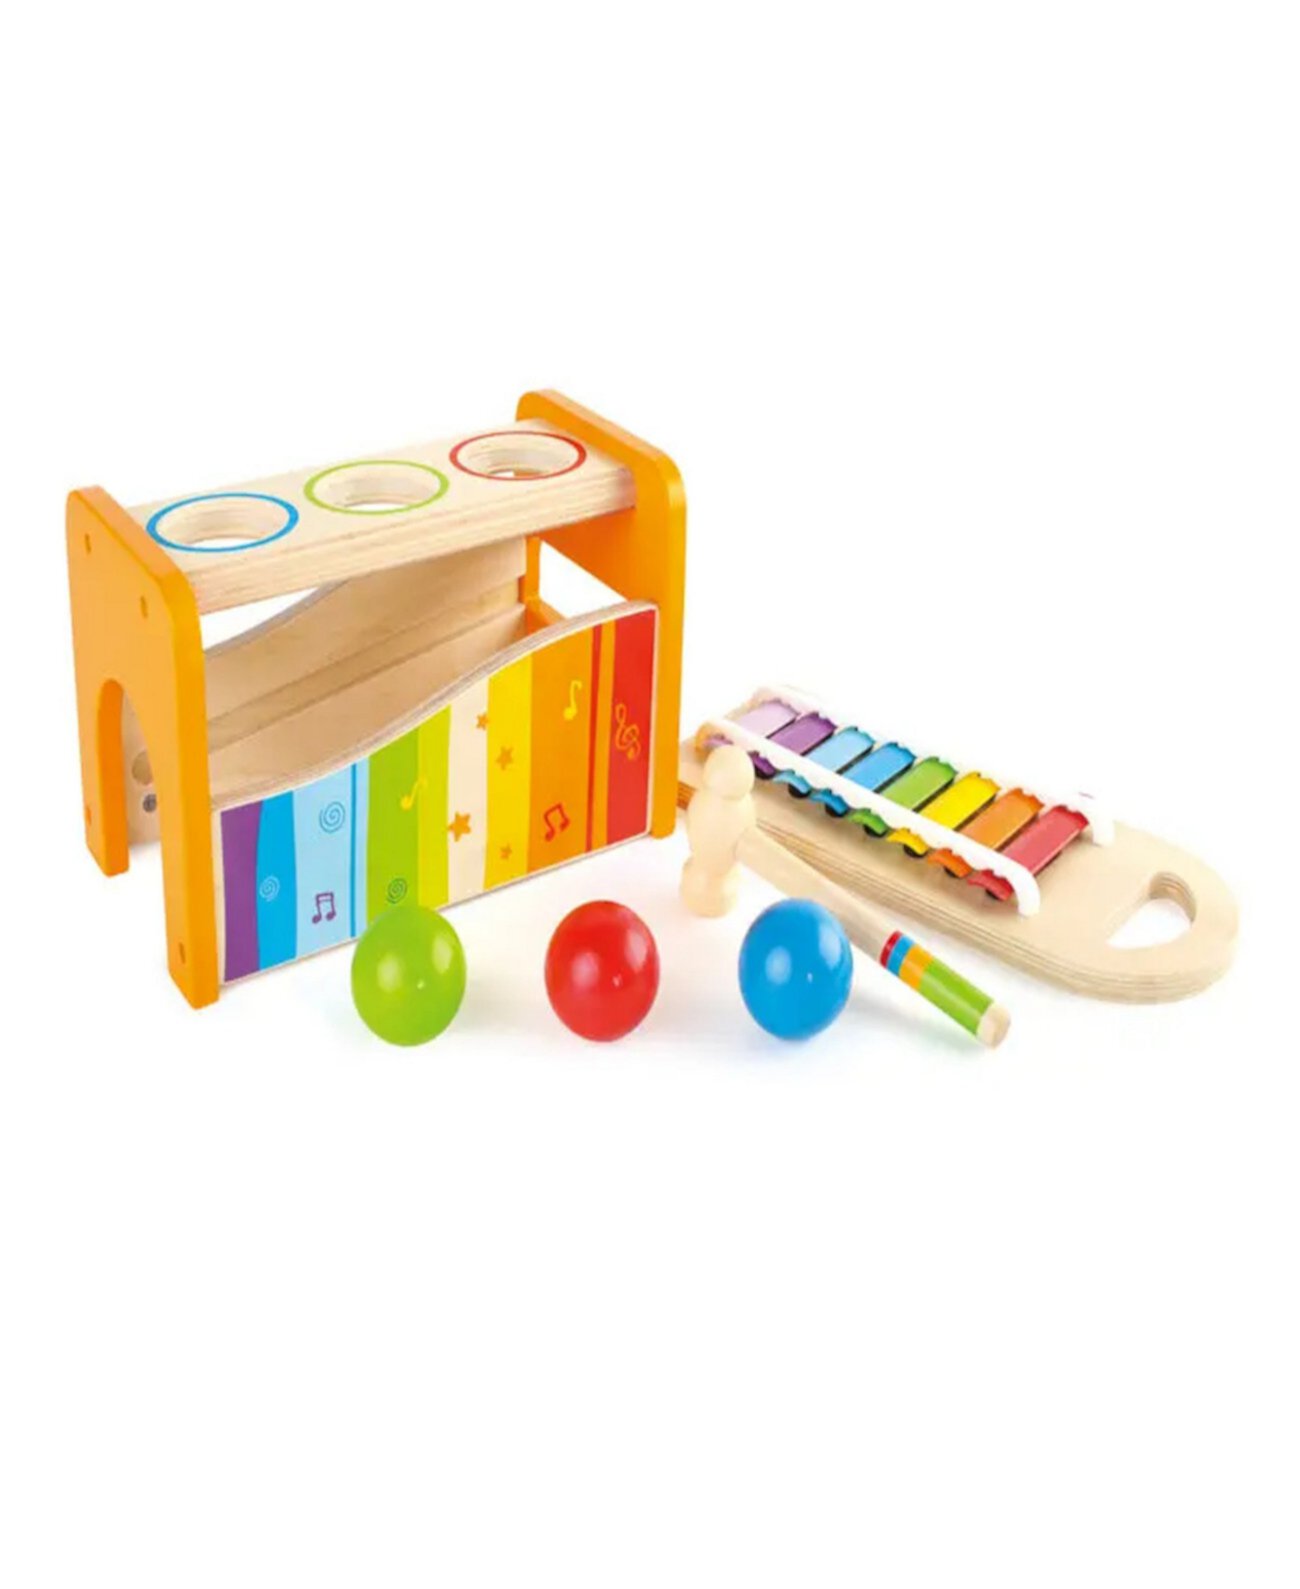 Игра музыкальная игрушка. Hape ксилофон е0305 бежевый. Сотер-ксилофон Hape. Музыкально-развивающая игрушка музыкальная скамейка Hape. Ксилофон Ausini 8851.